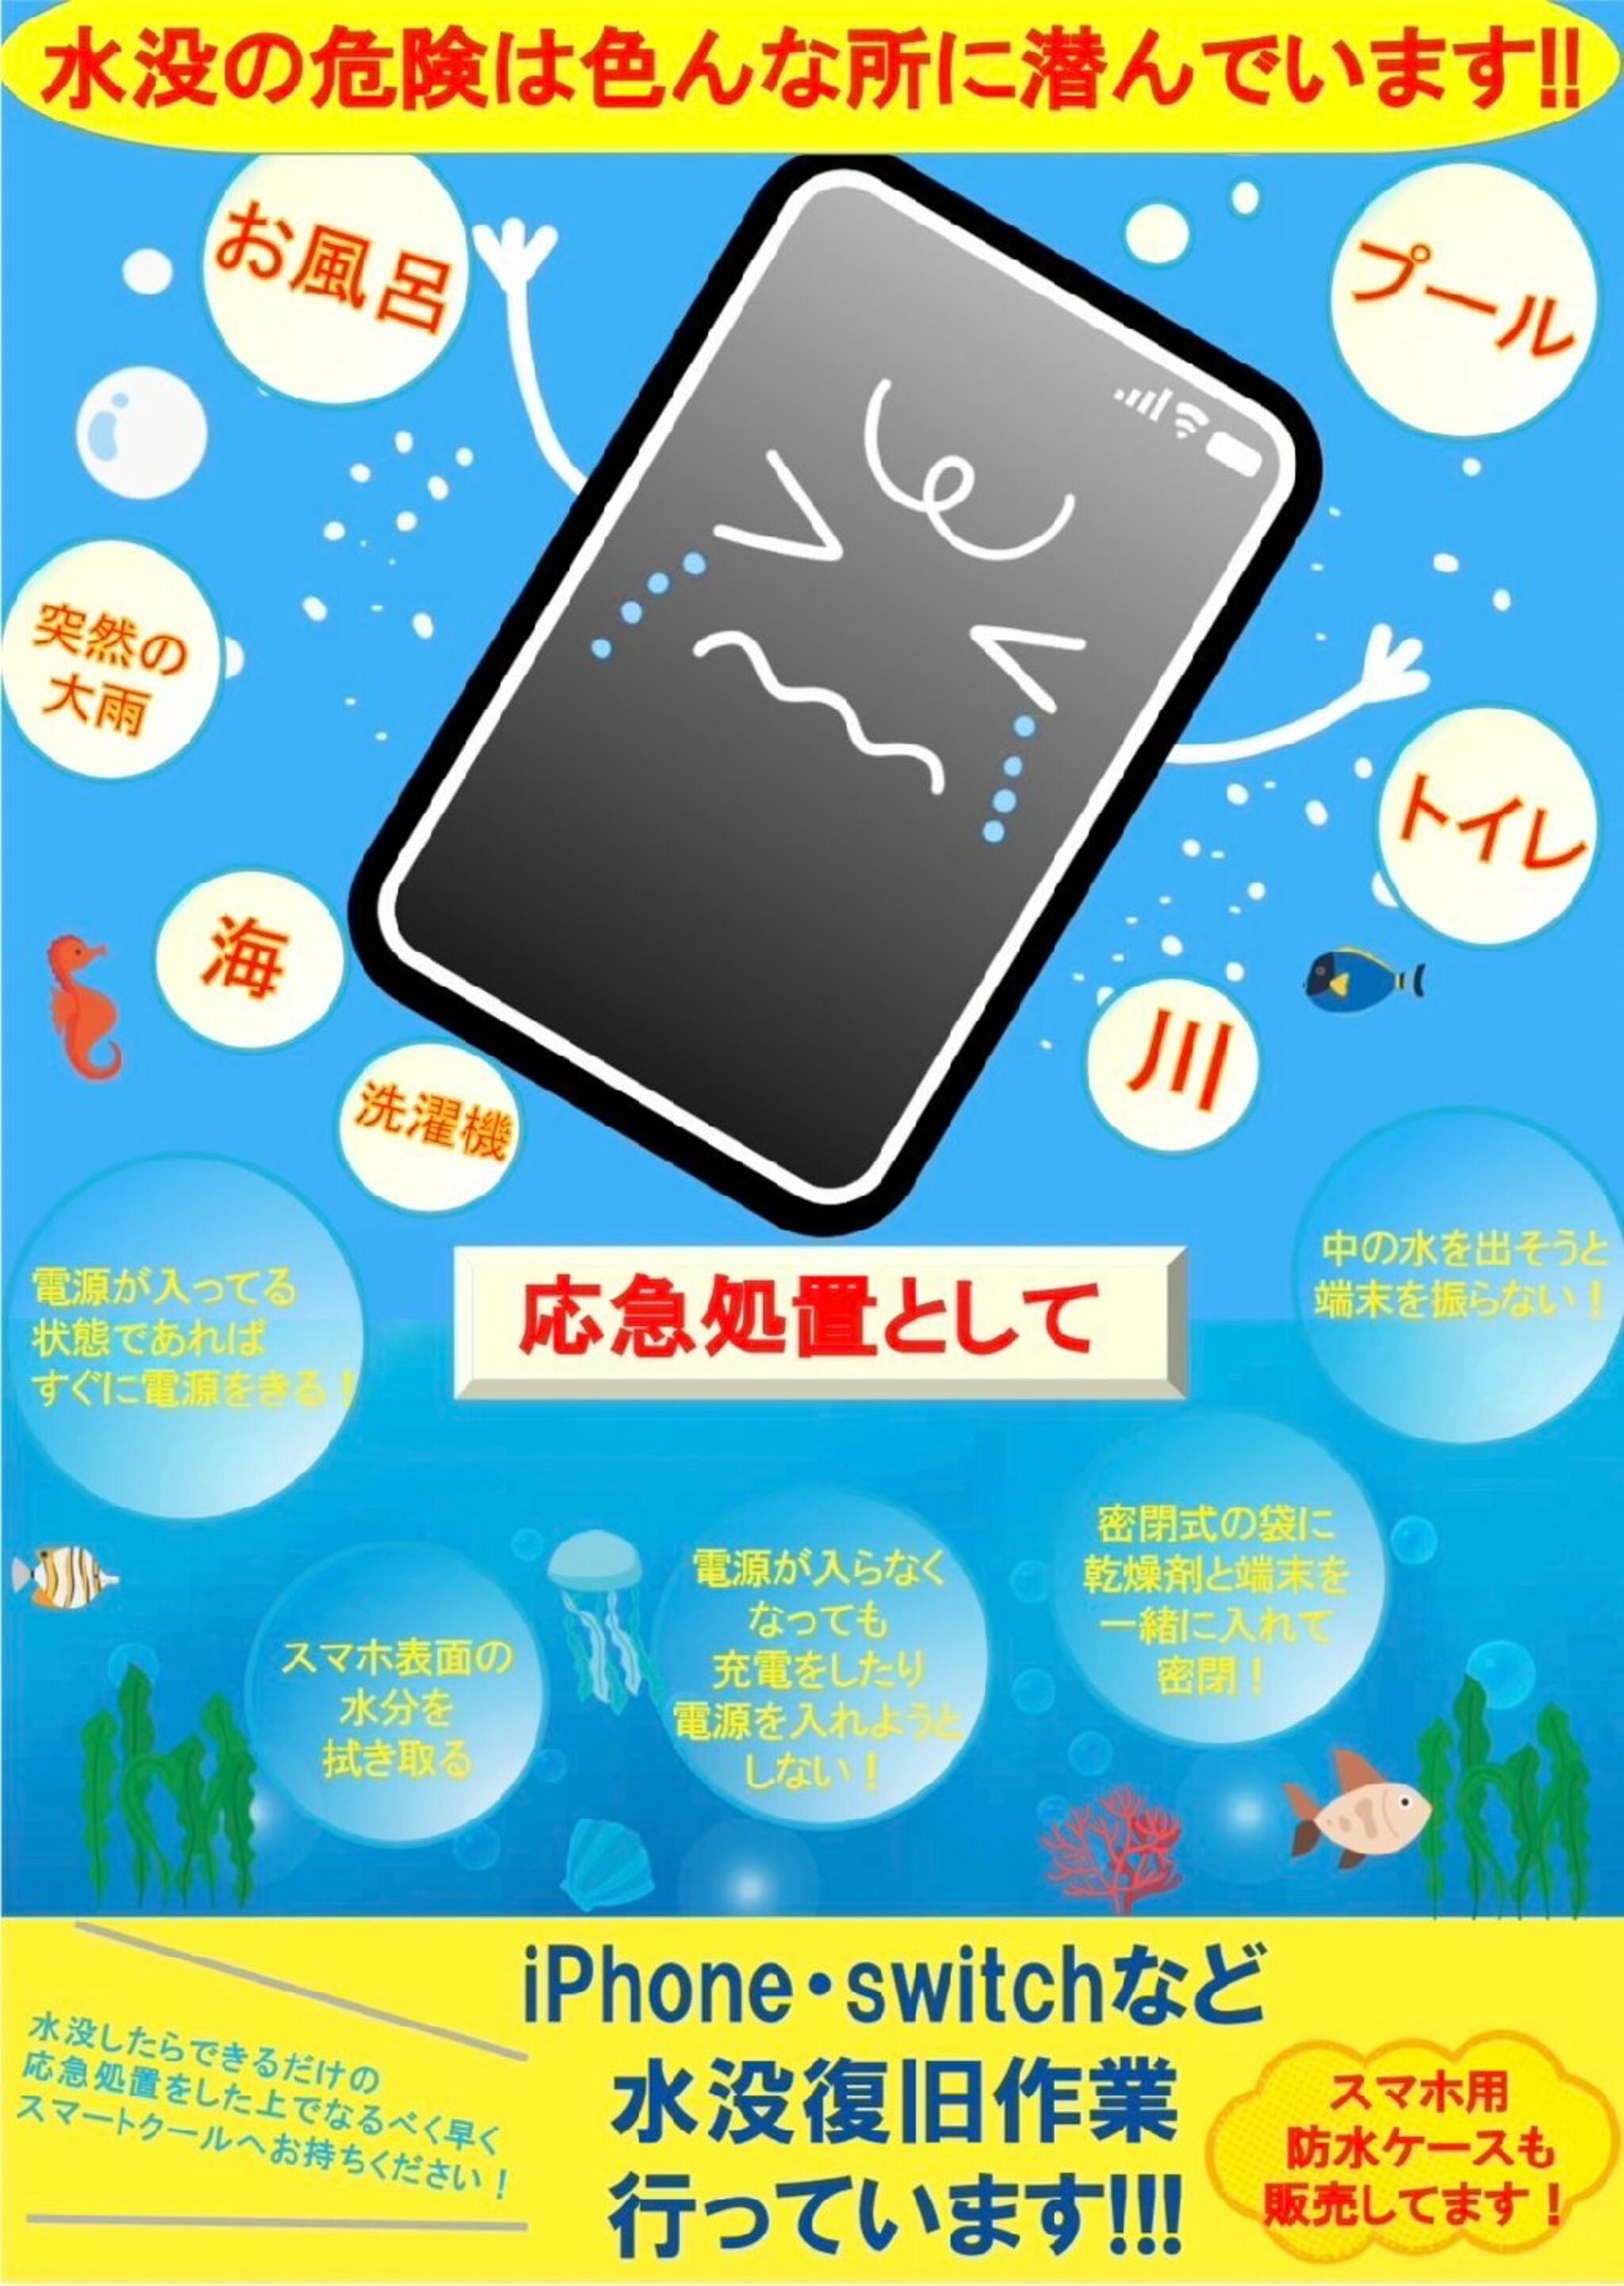 iPhone・iPad・Switch修理店 スマートクール イオンモール広島祇園店からのお知らせ(夏は水没での問い合わせが増えています)に関する写真